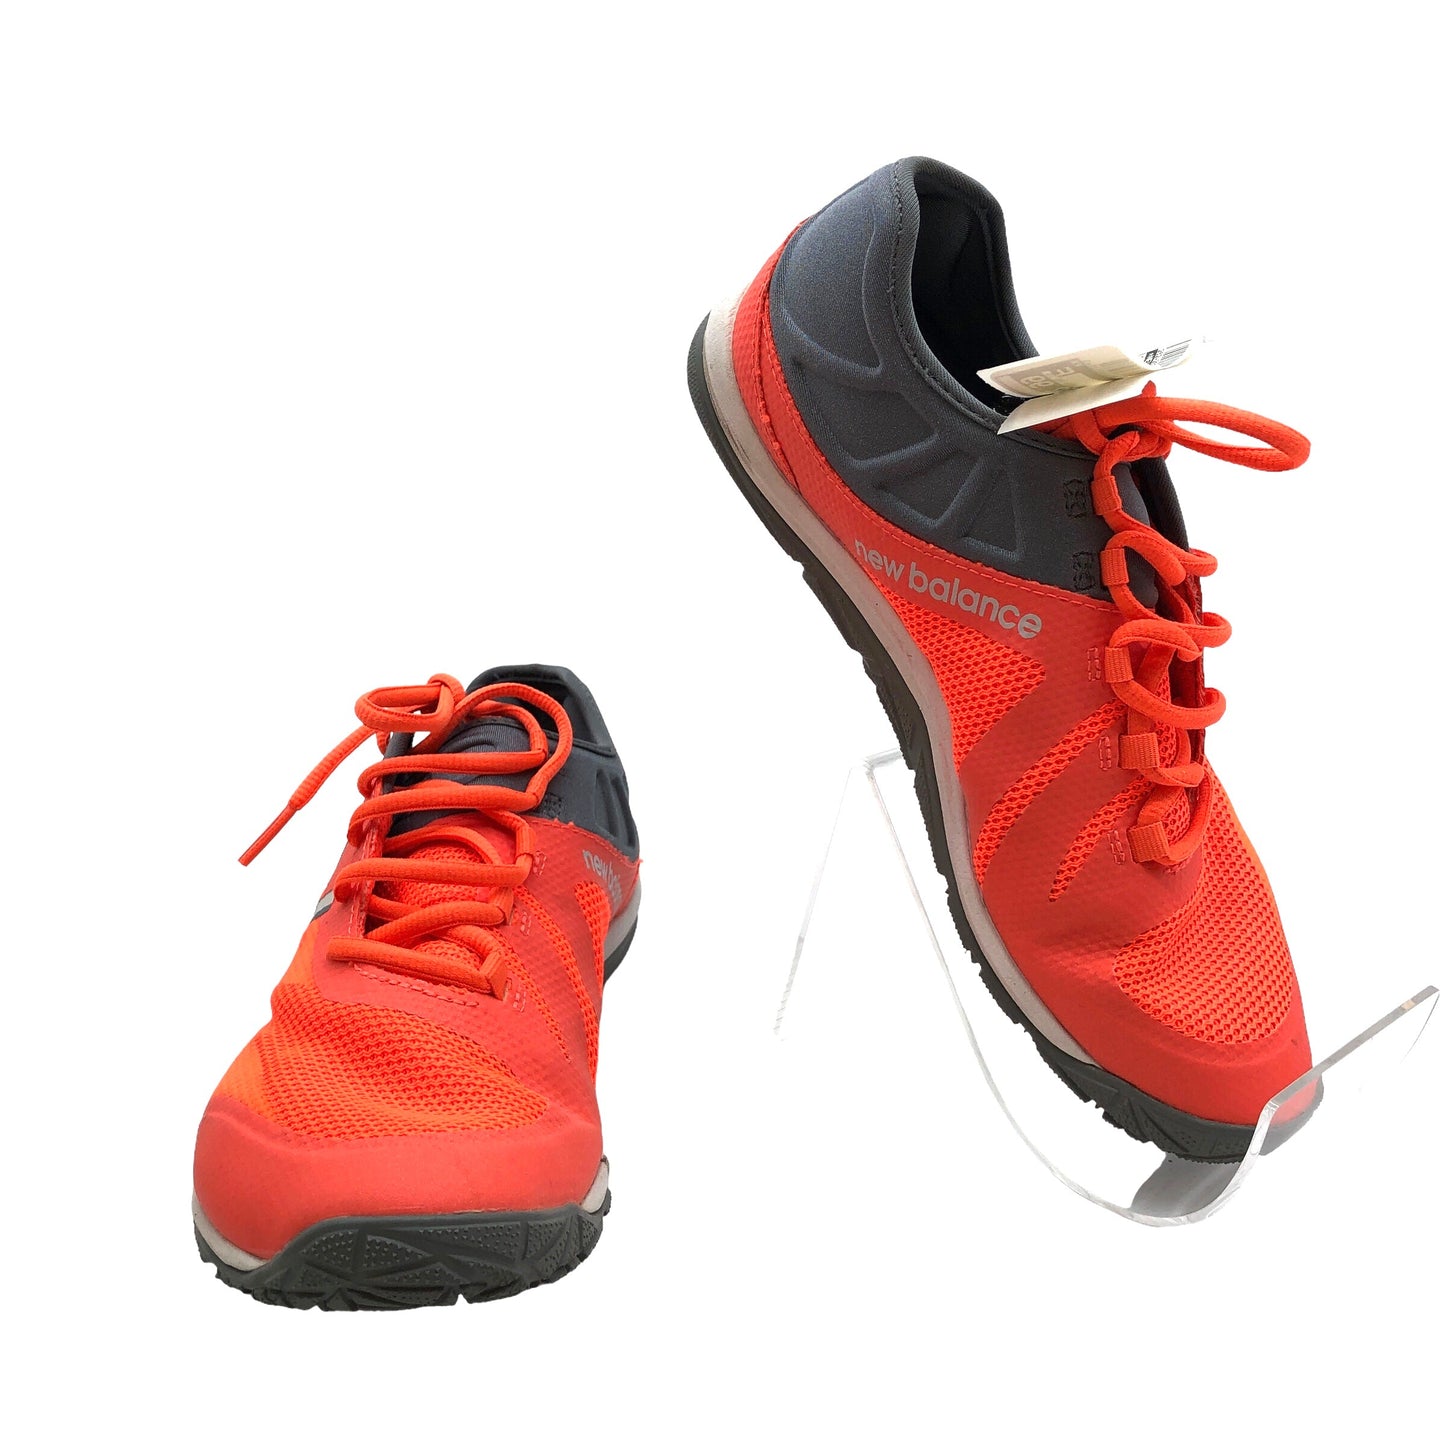 Grey & Orange Shoes Athletic New Balance, Size 9.5